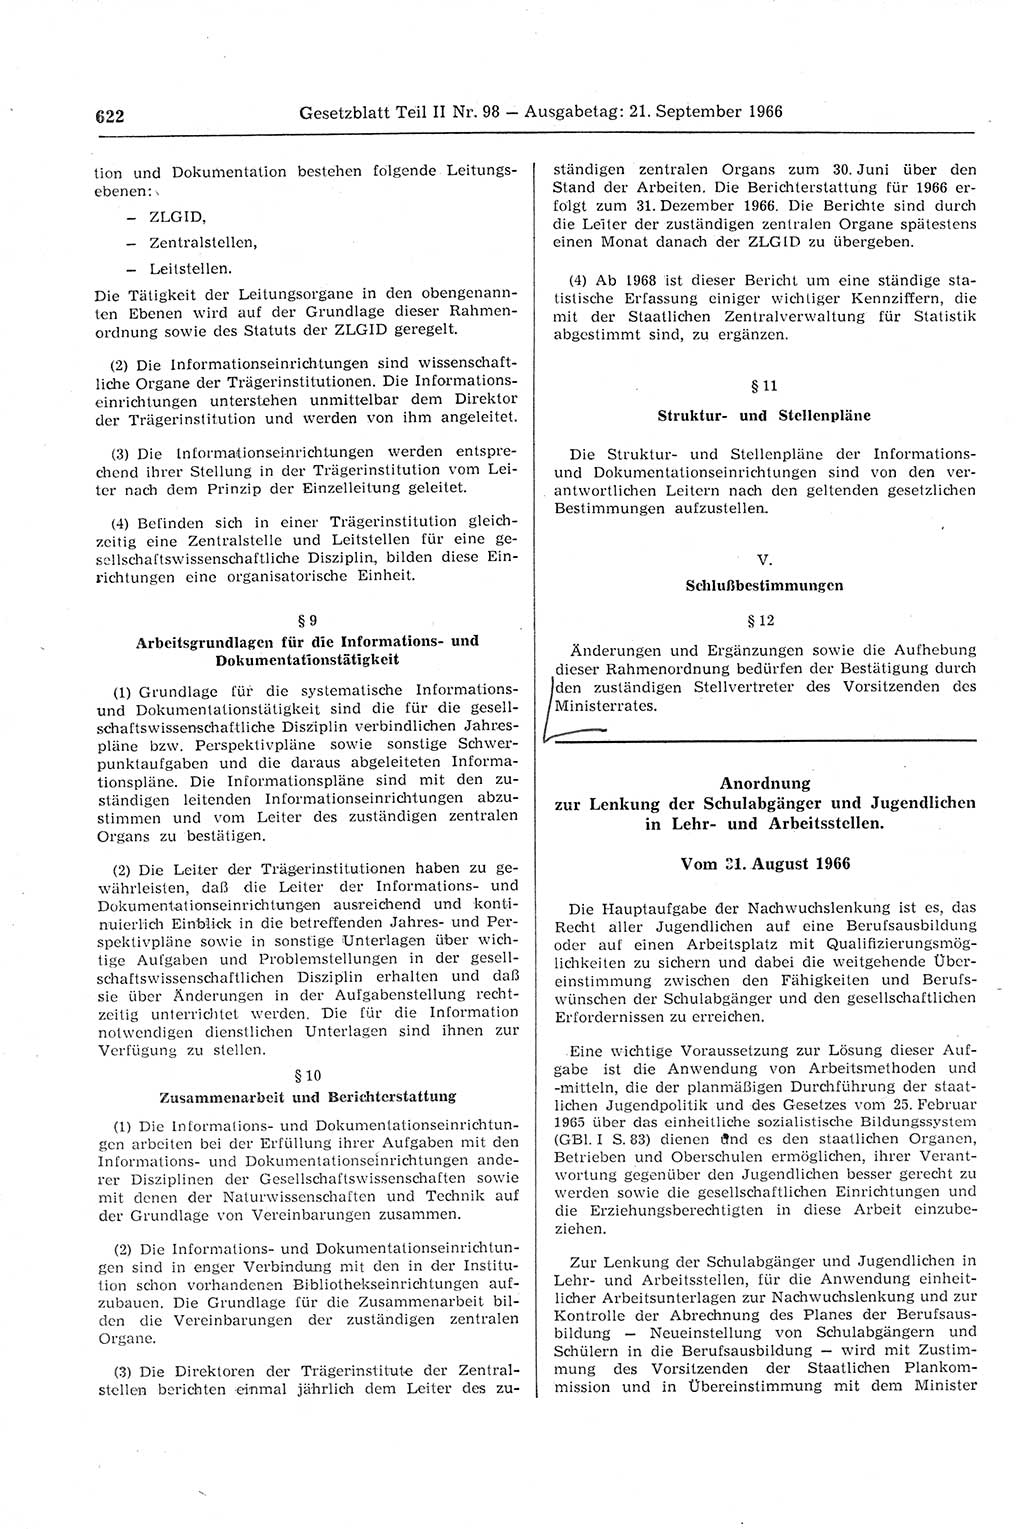 Gesetzblatt (GBl.) der Deutschen Demokratischen Republik (DDR) Teil ⅠⅠ 1966, Seite 622 (GBl. DDR ⅠⅠ 1966, S. 622)